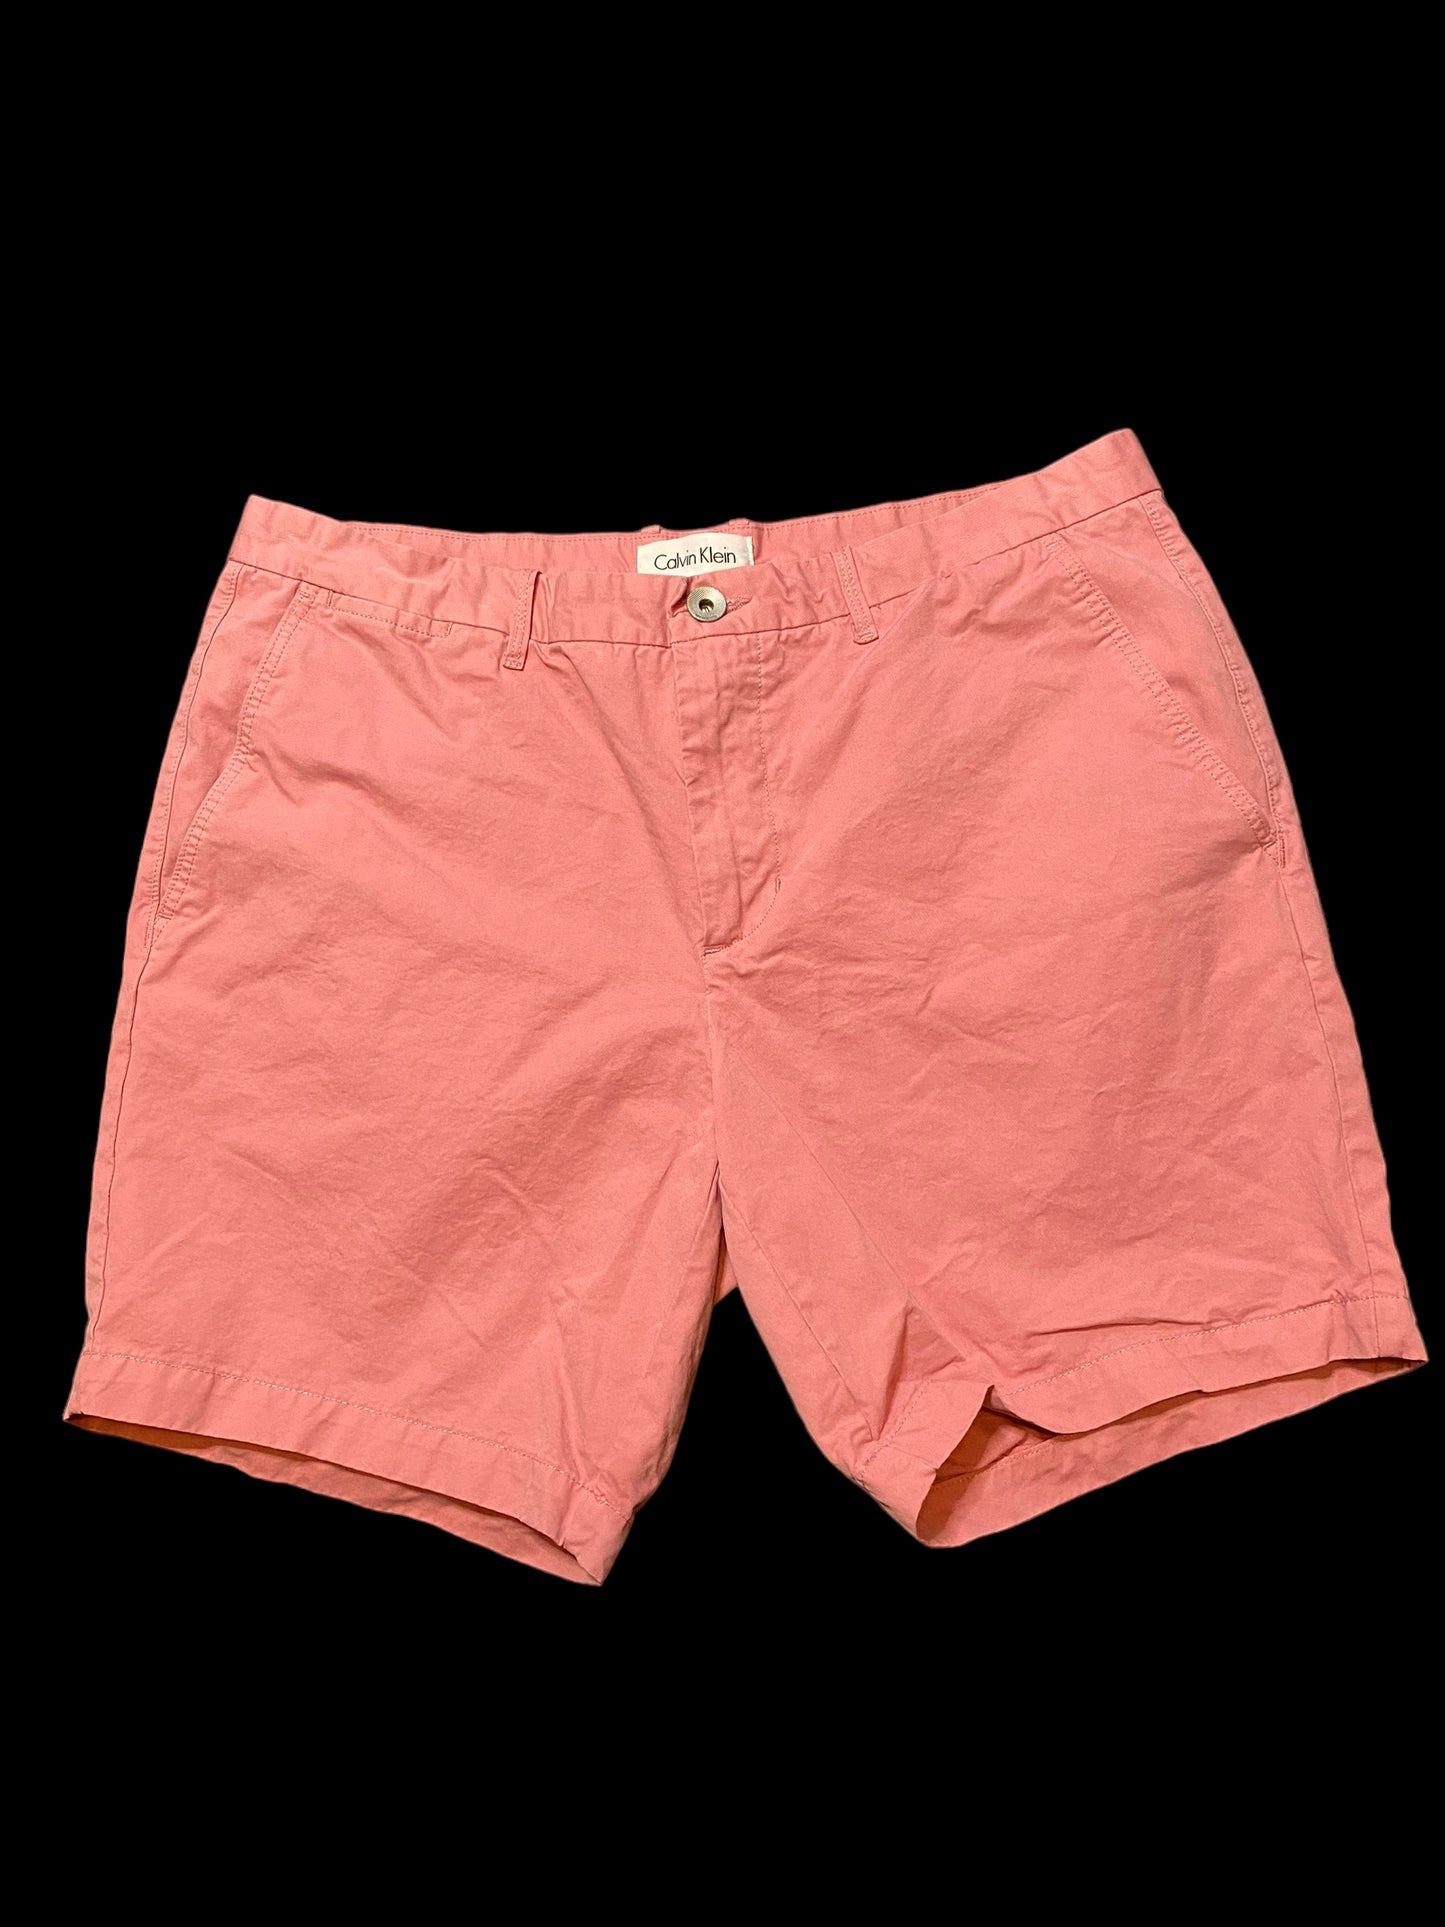 Calvin Klein Pink Khacki Shorts